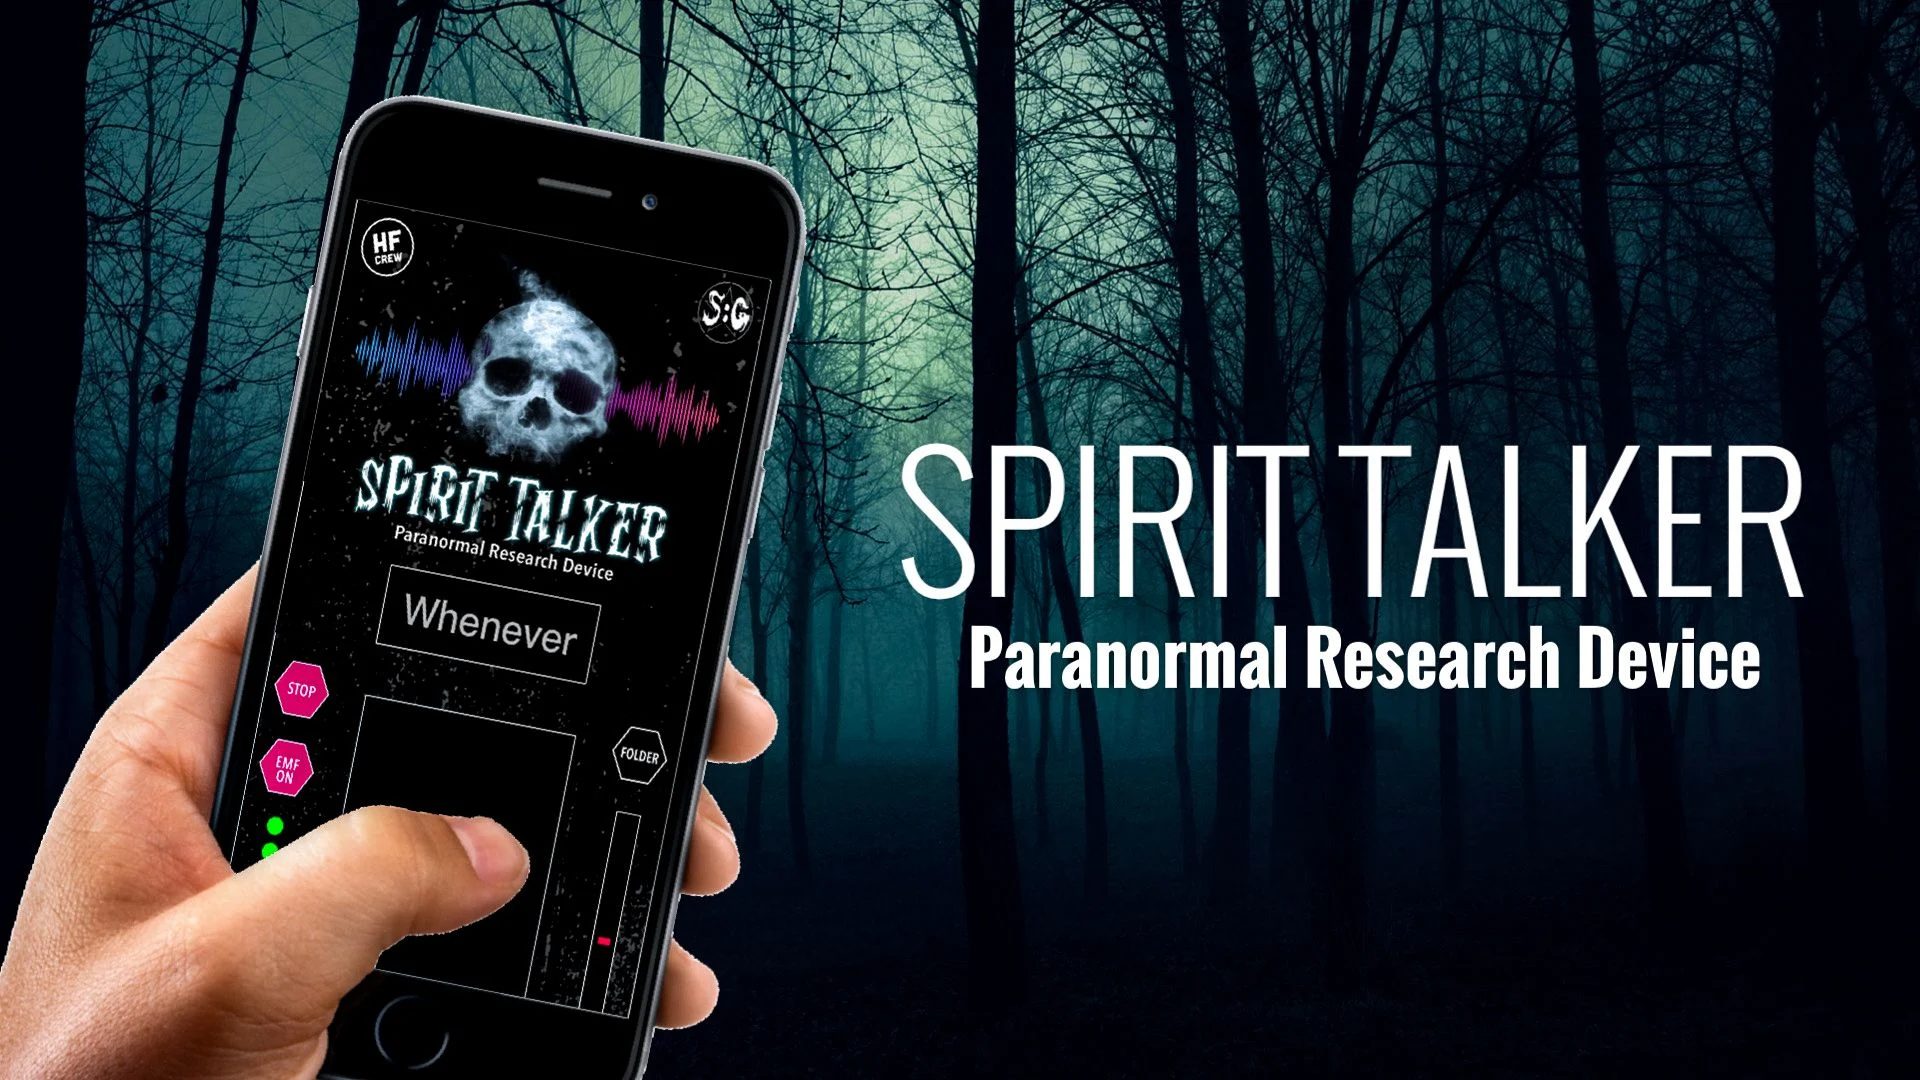 The Spirit Talker App